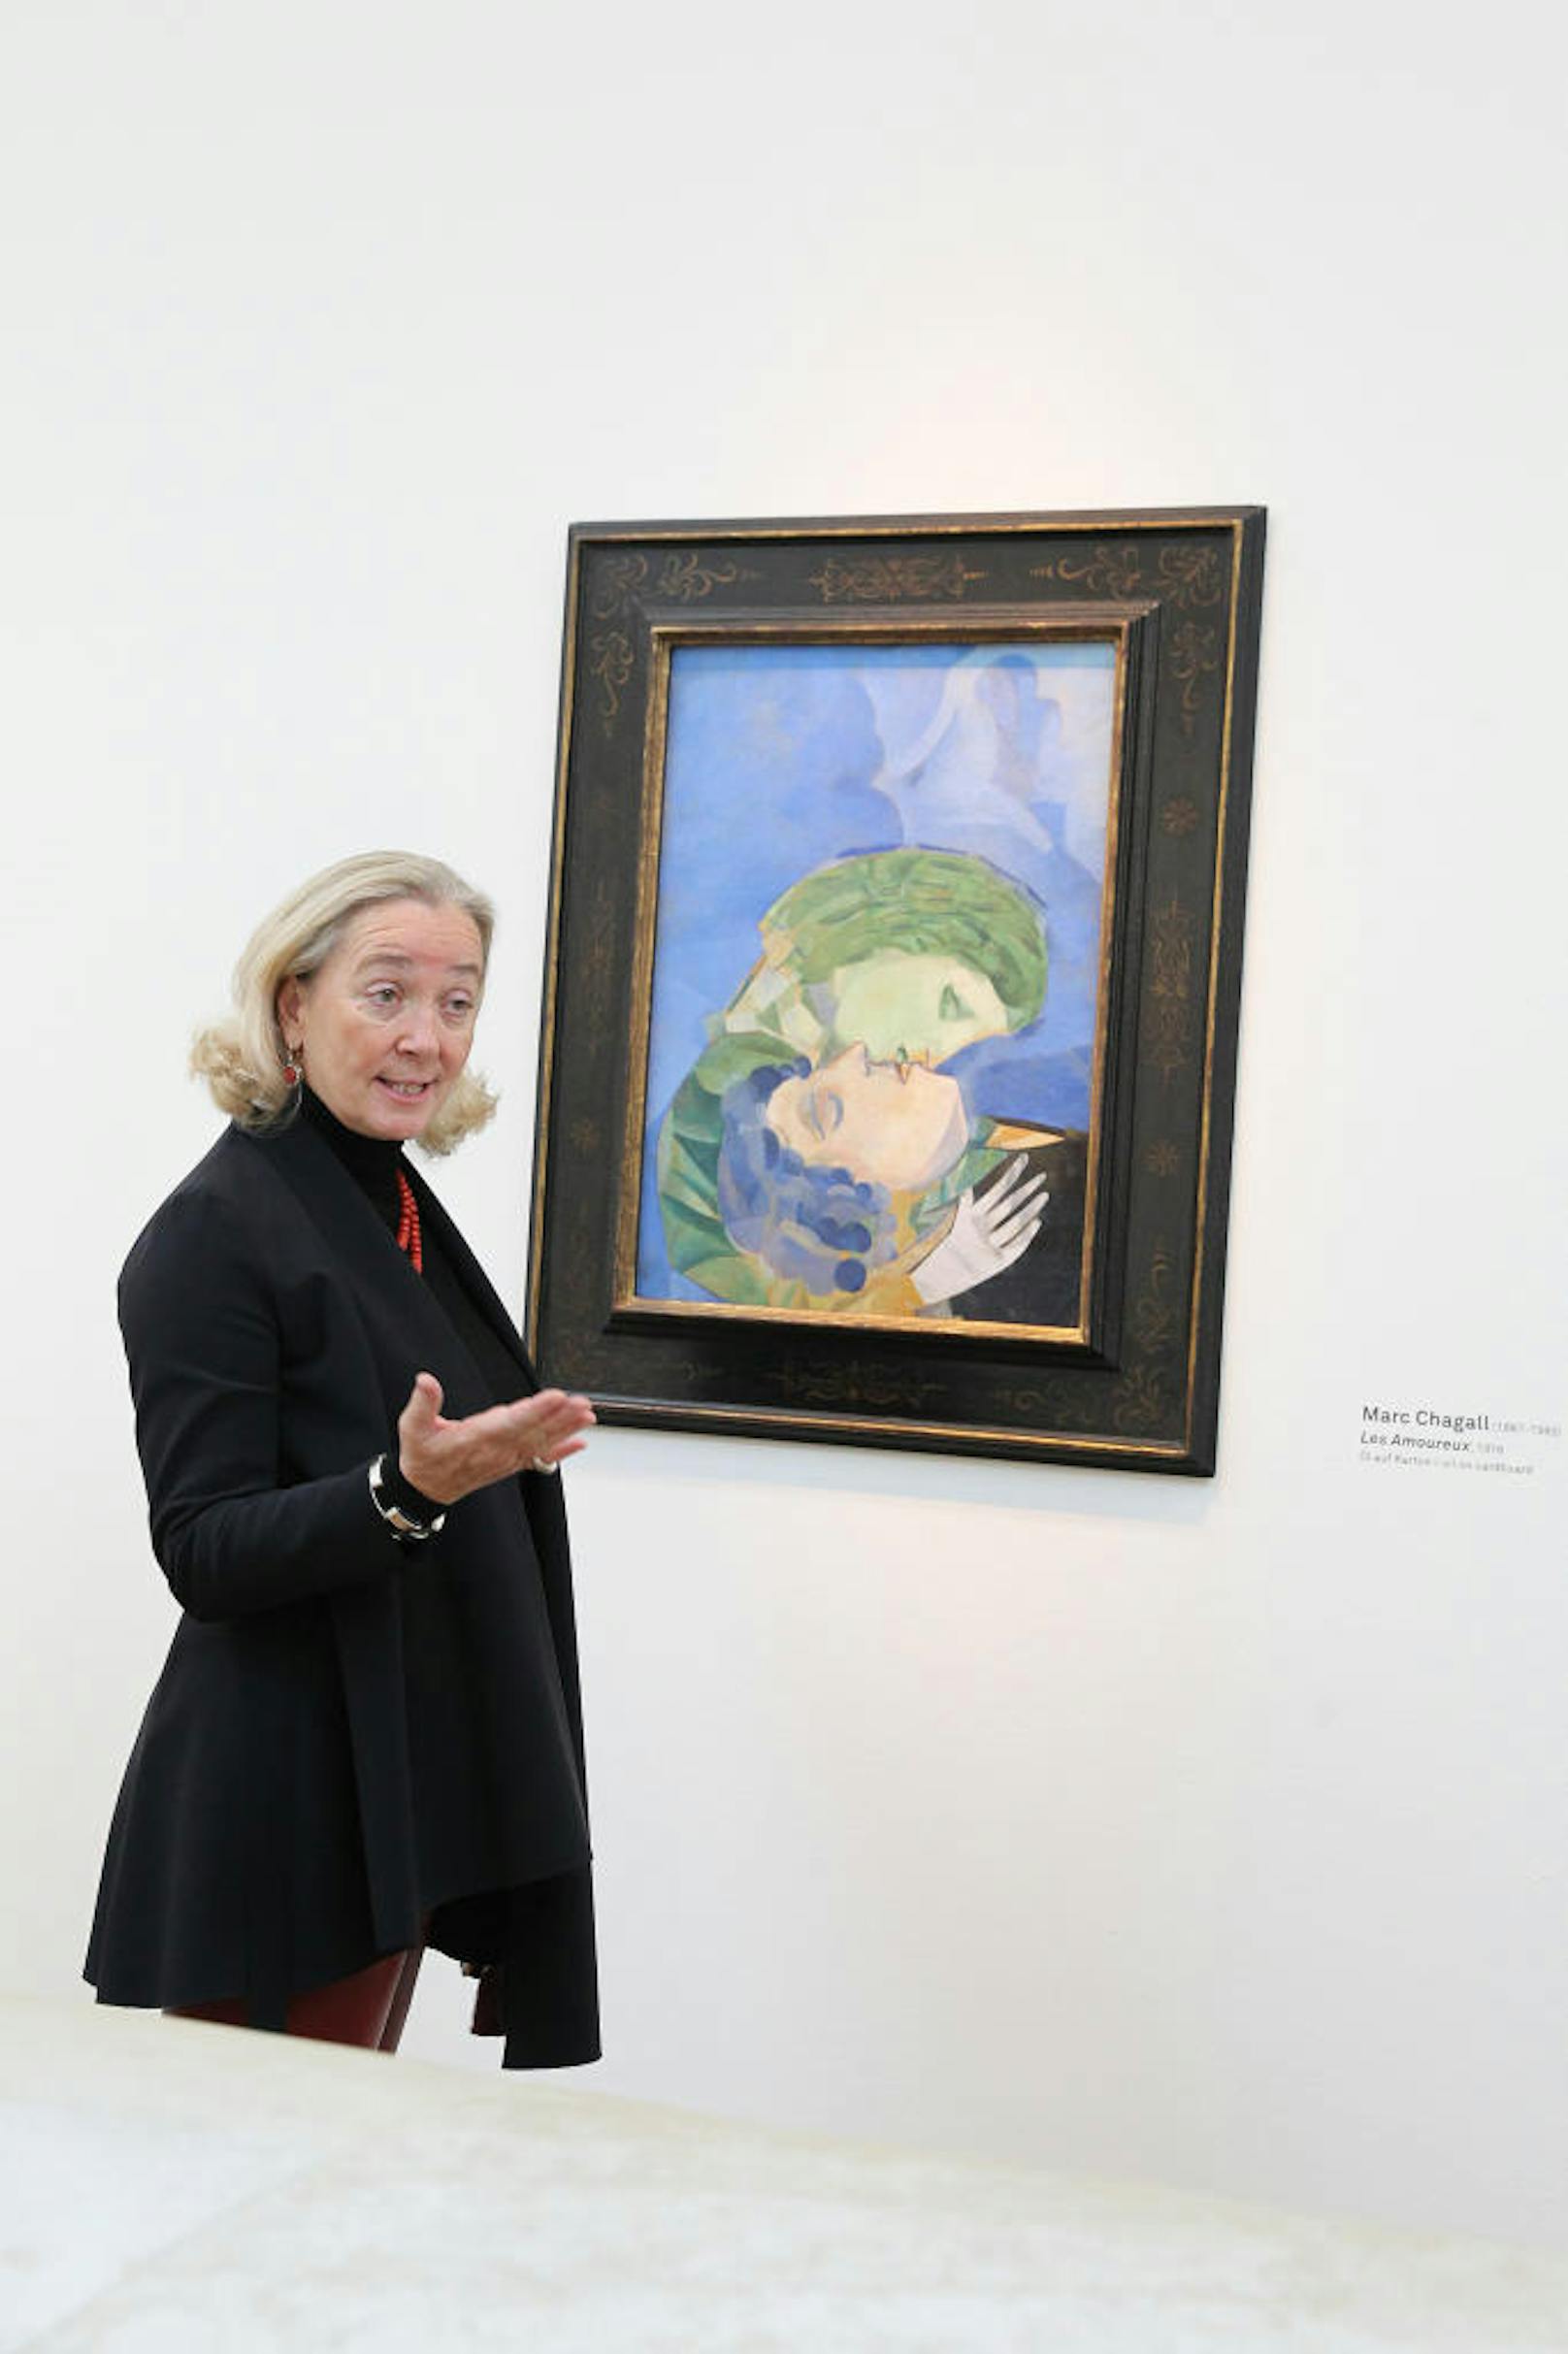 "WOW! The Heidi Horten Collection": Husslein über "Les Amoureux" von Marc Chagall (1916): "Diese Werk widmete der junge Chagall seiner frisch angetrauten Ehefrau. Man sieht die Inbrunst der beiden, sie sind versunken. Ein großartiges Werk und das liebste der Sammlerin!"